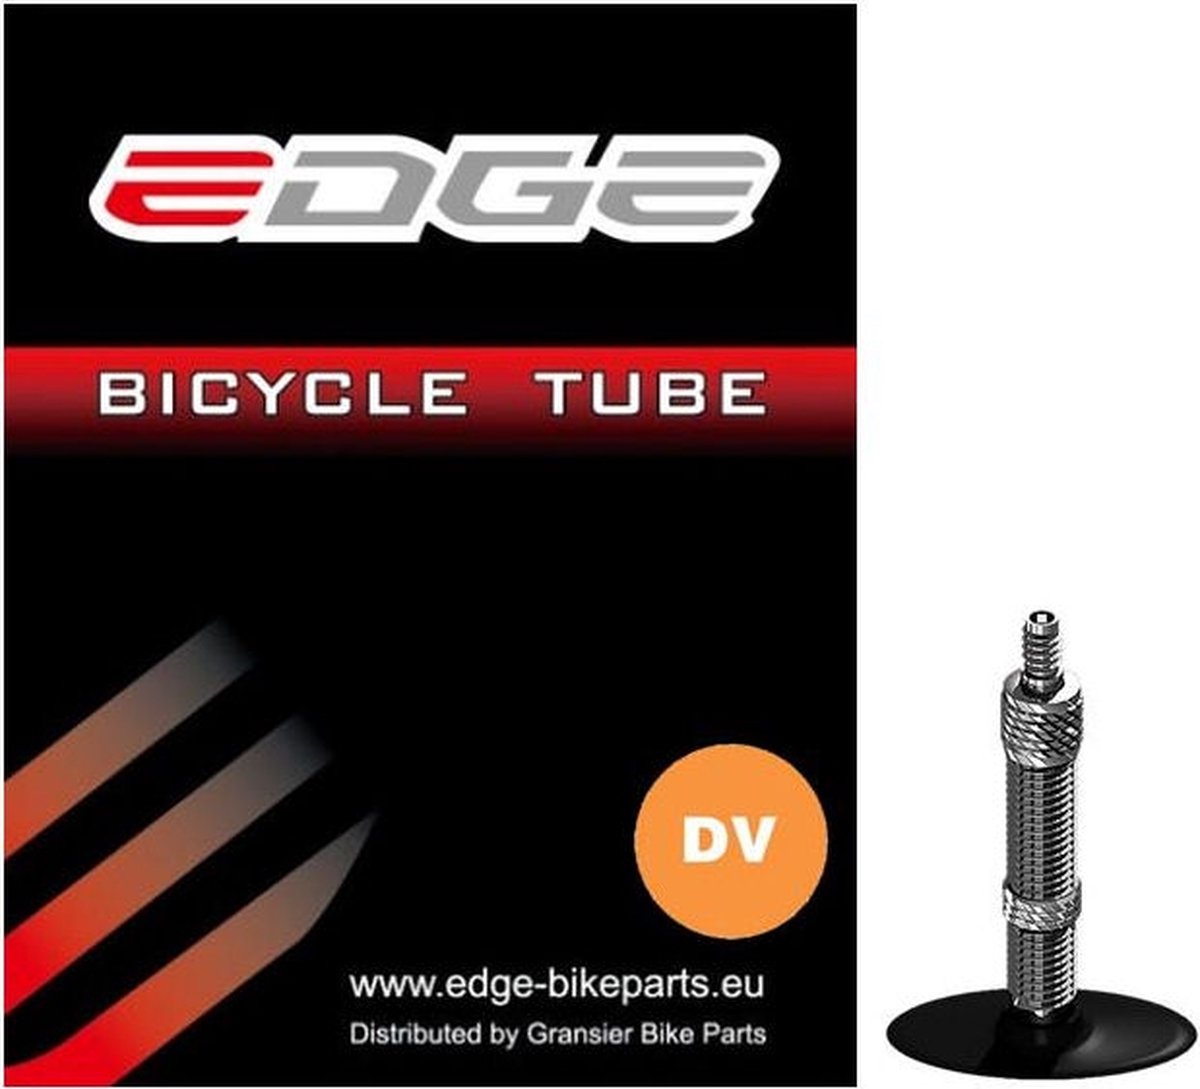 Binnenband Edge 24 (37/57-507/541) - DV40mm